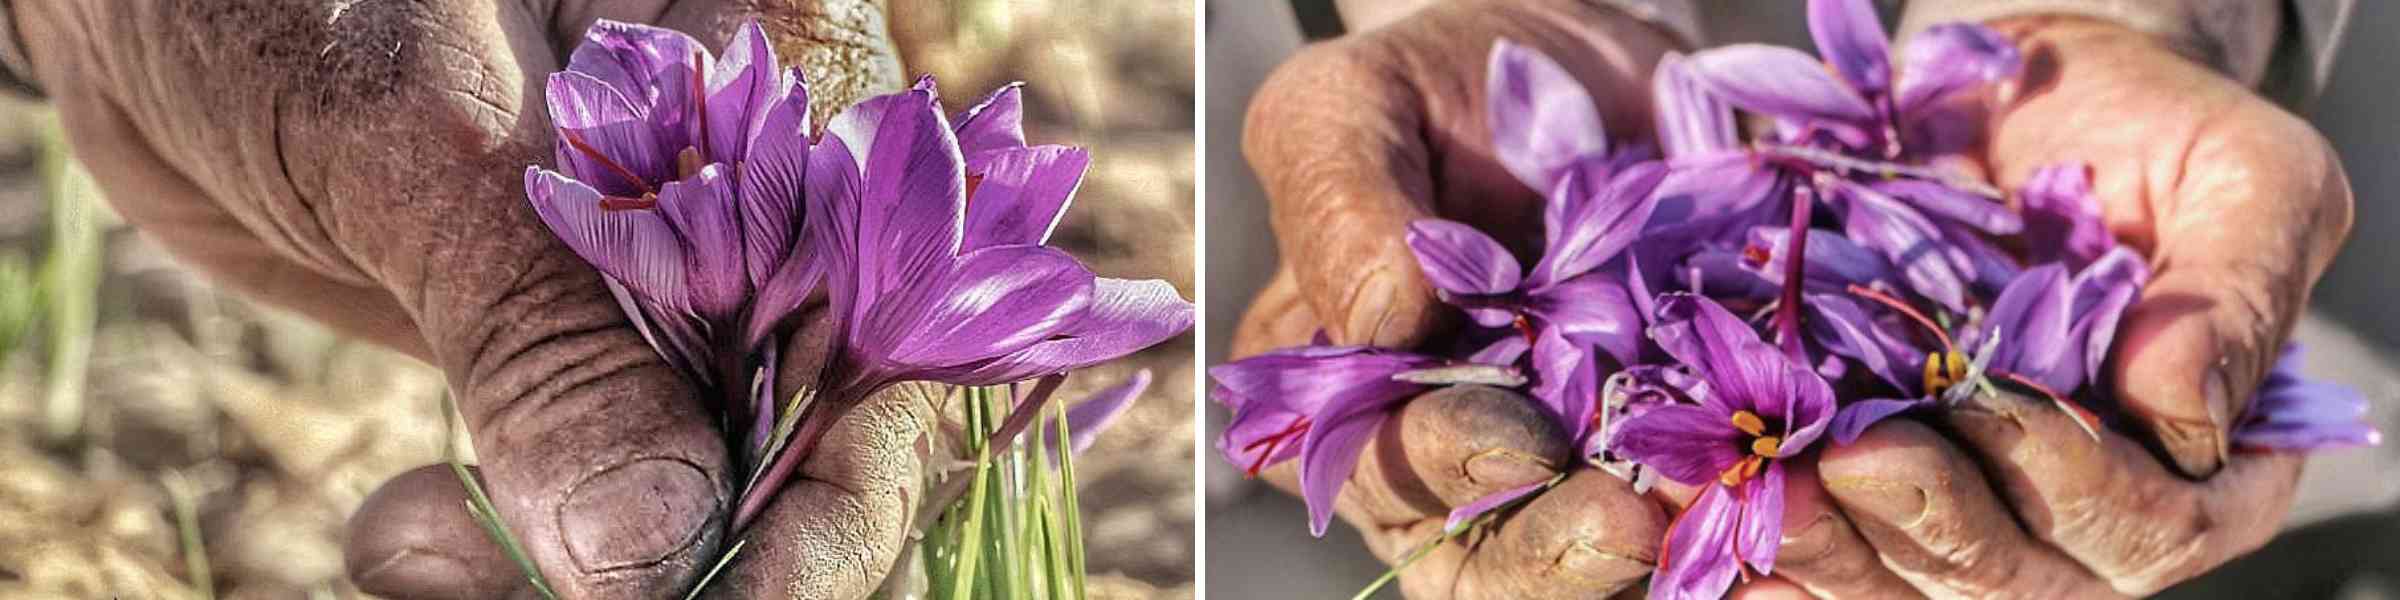 Saffron farmers hand